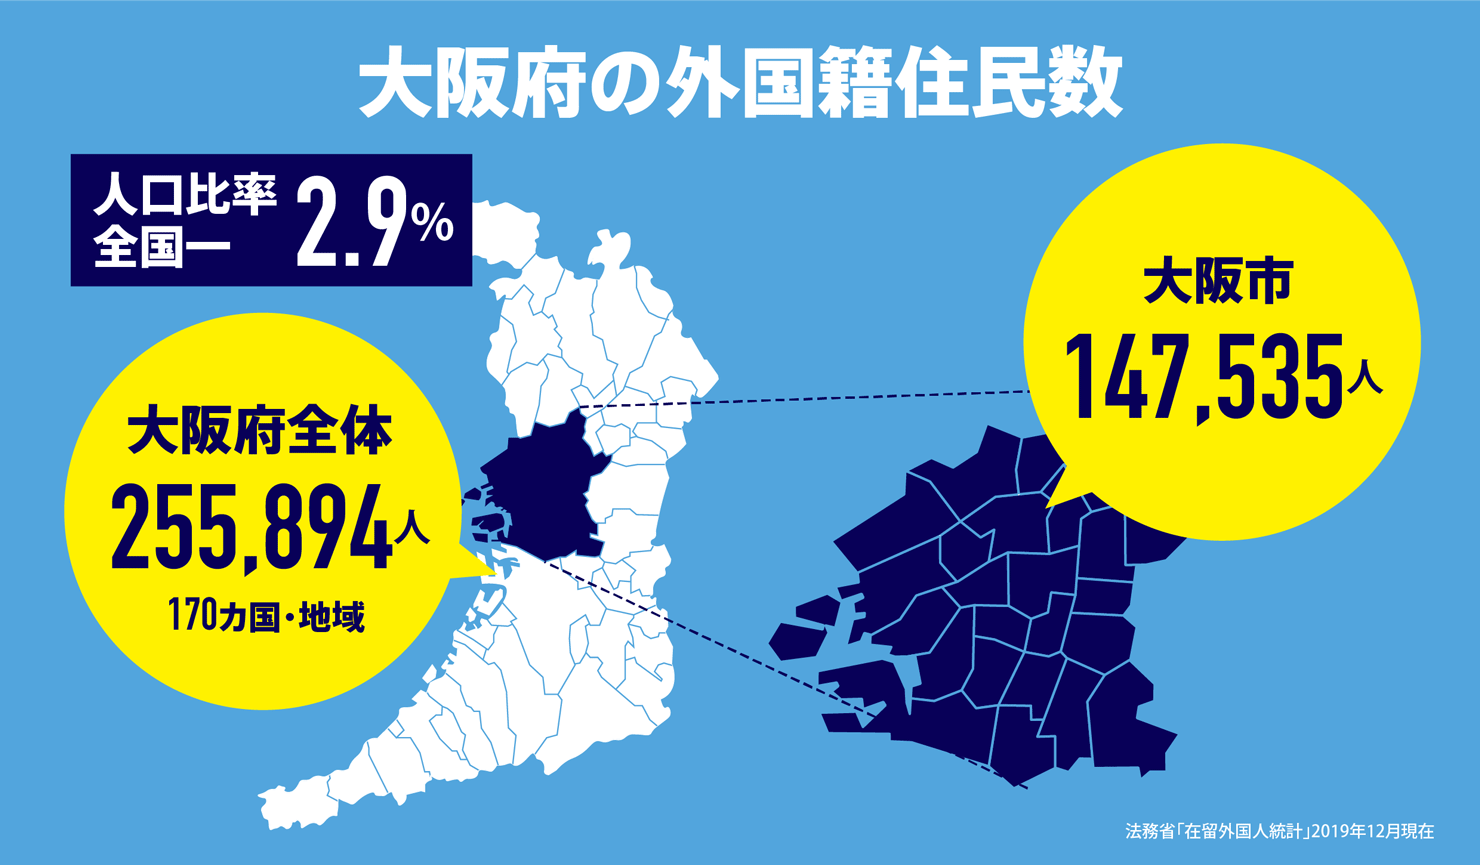 大阪府の外国籍住民数は人口比率全国１位2.9%を示す図